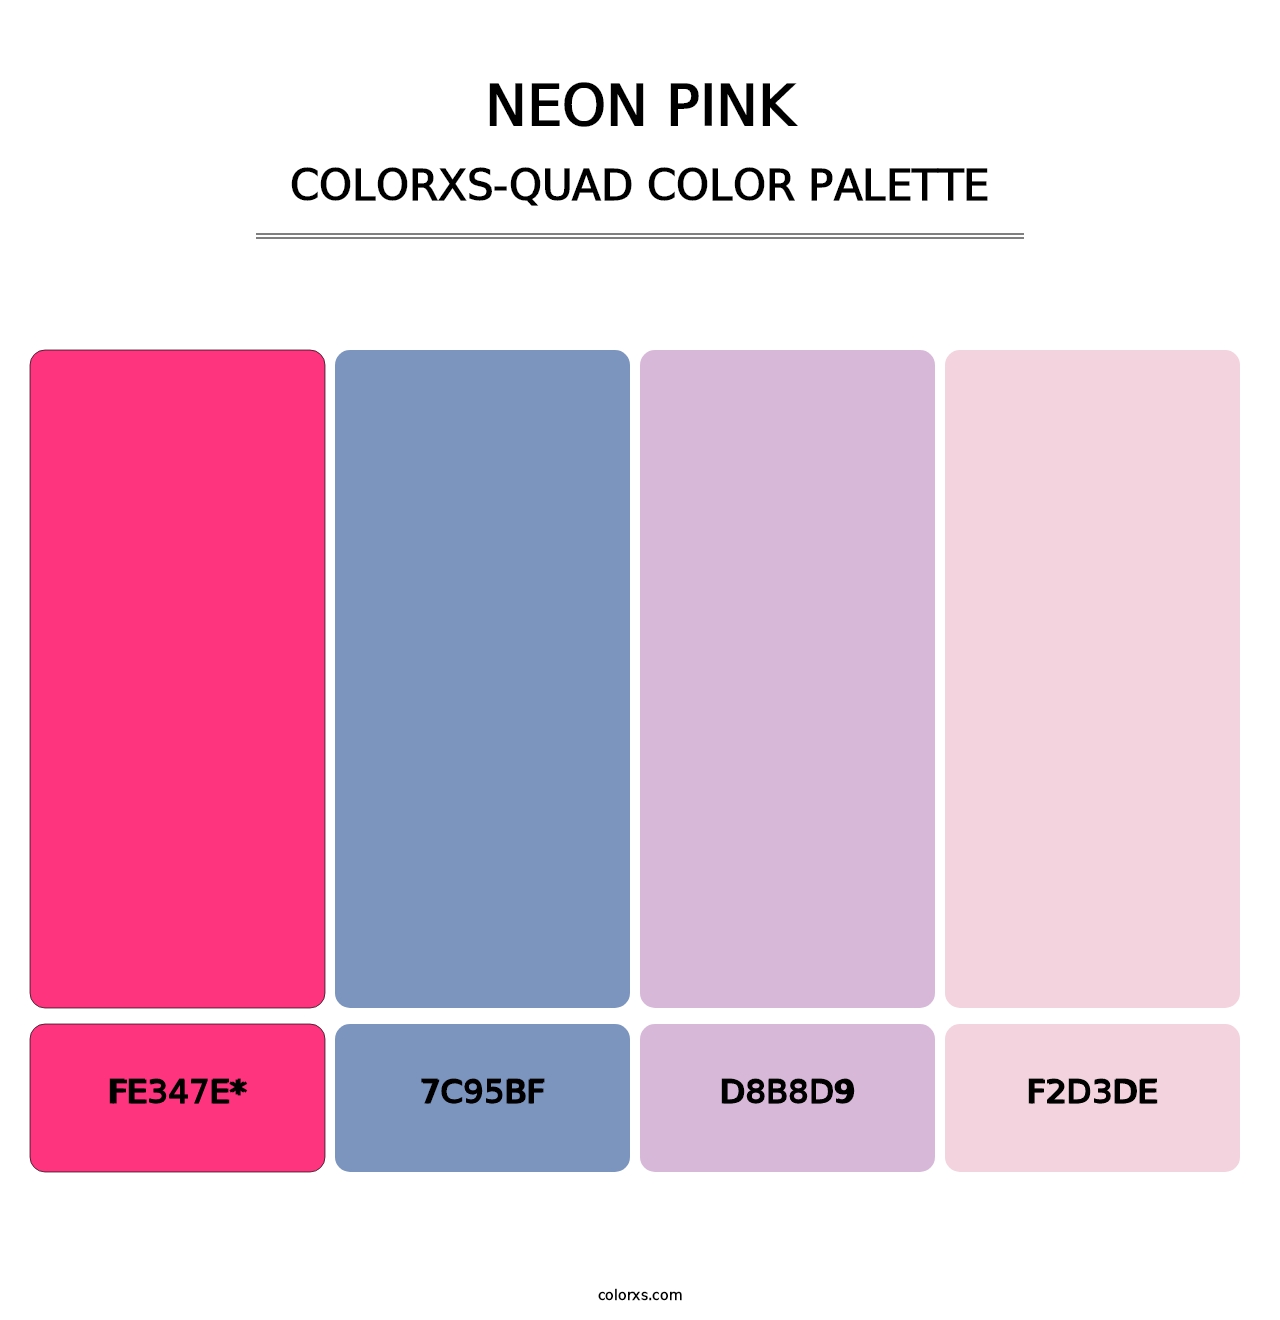 Neon Pink - Colorxs Quad Palette